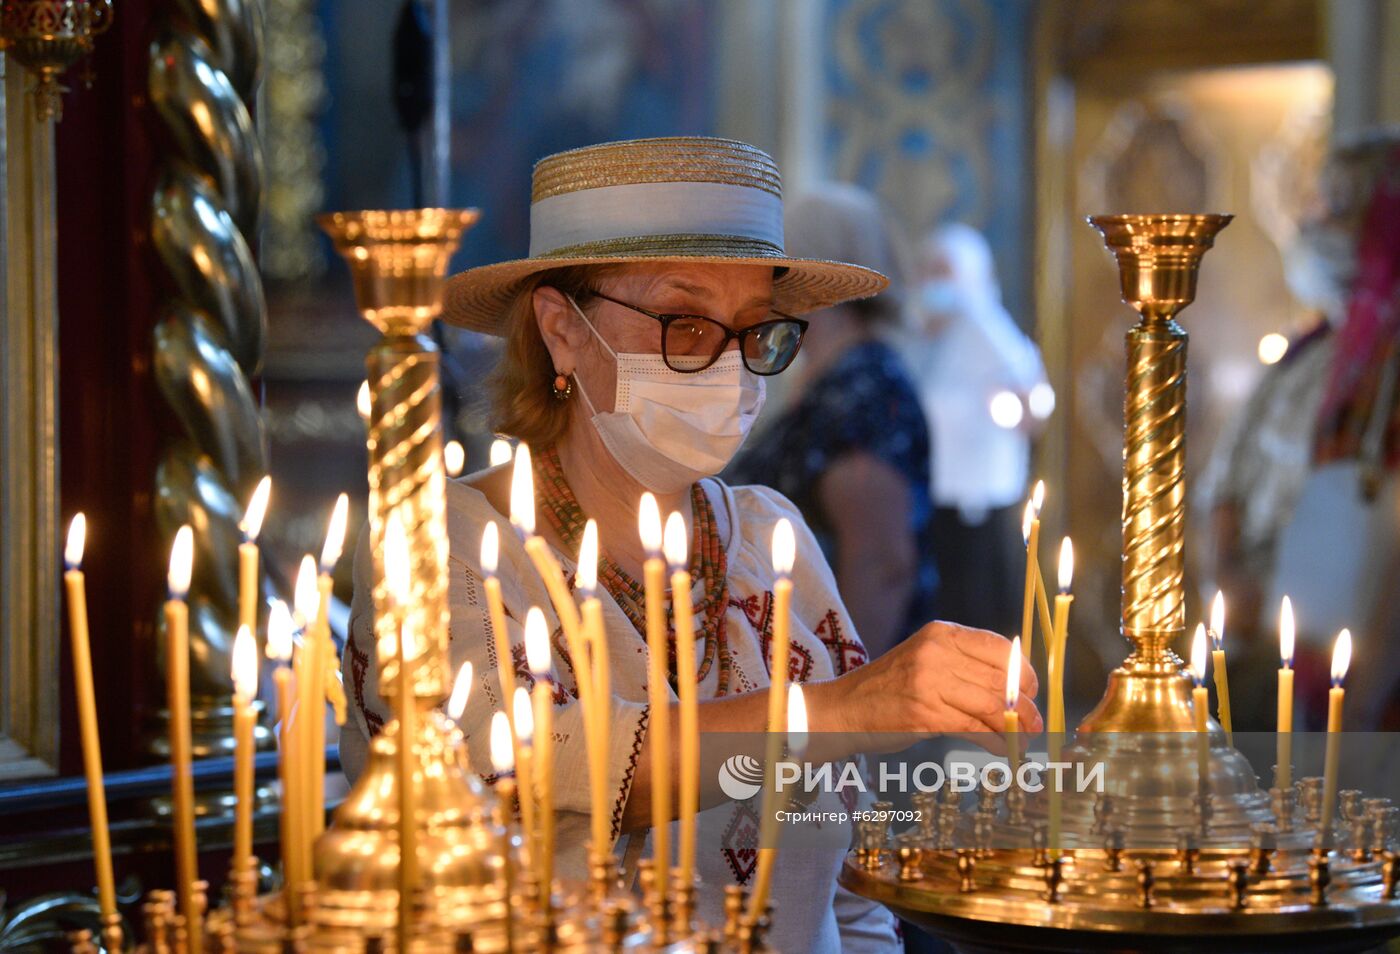 Мероприятия по случаю 1032-летия Крещения Руси в Киеве